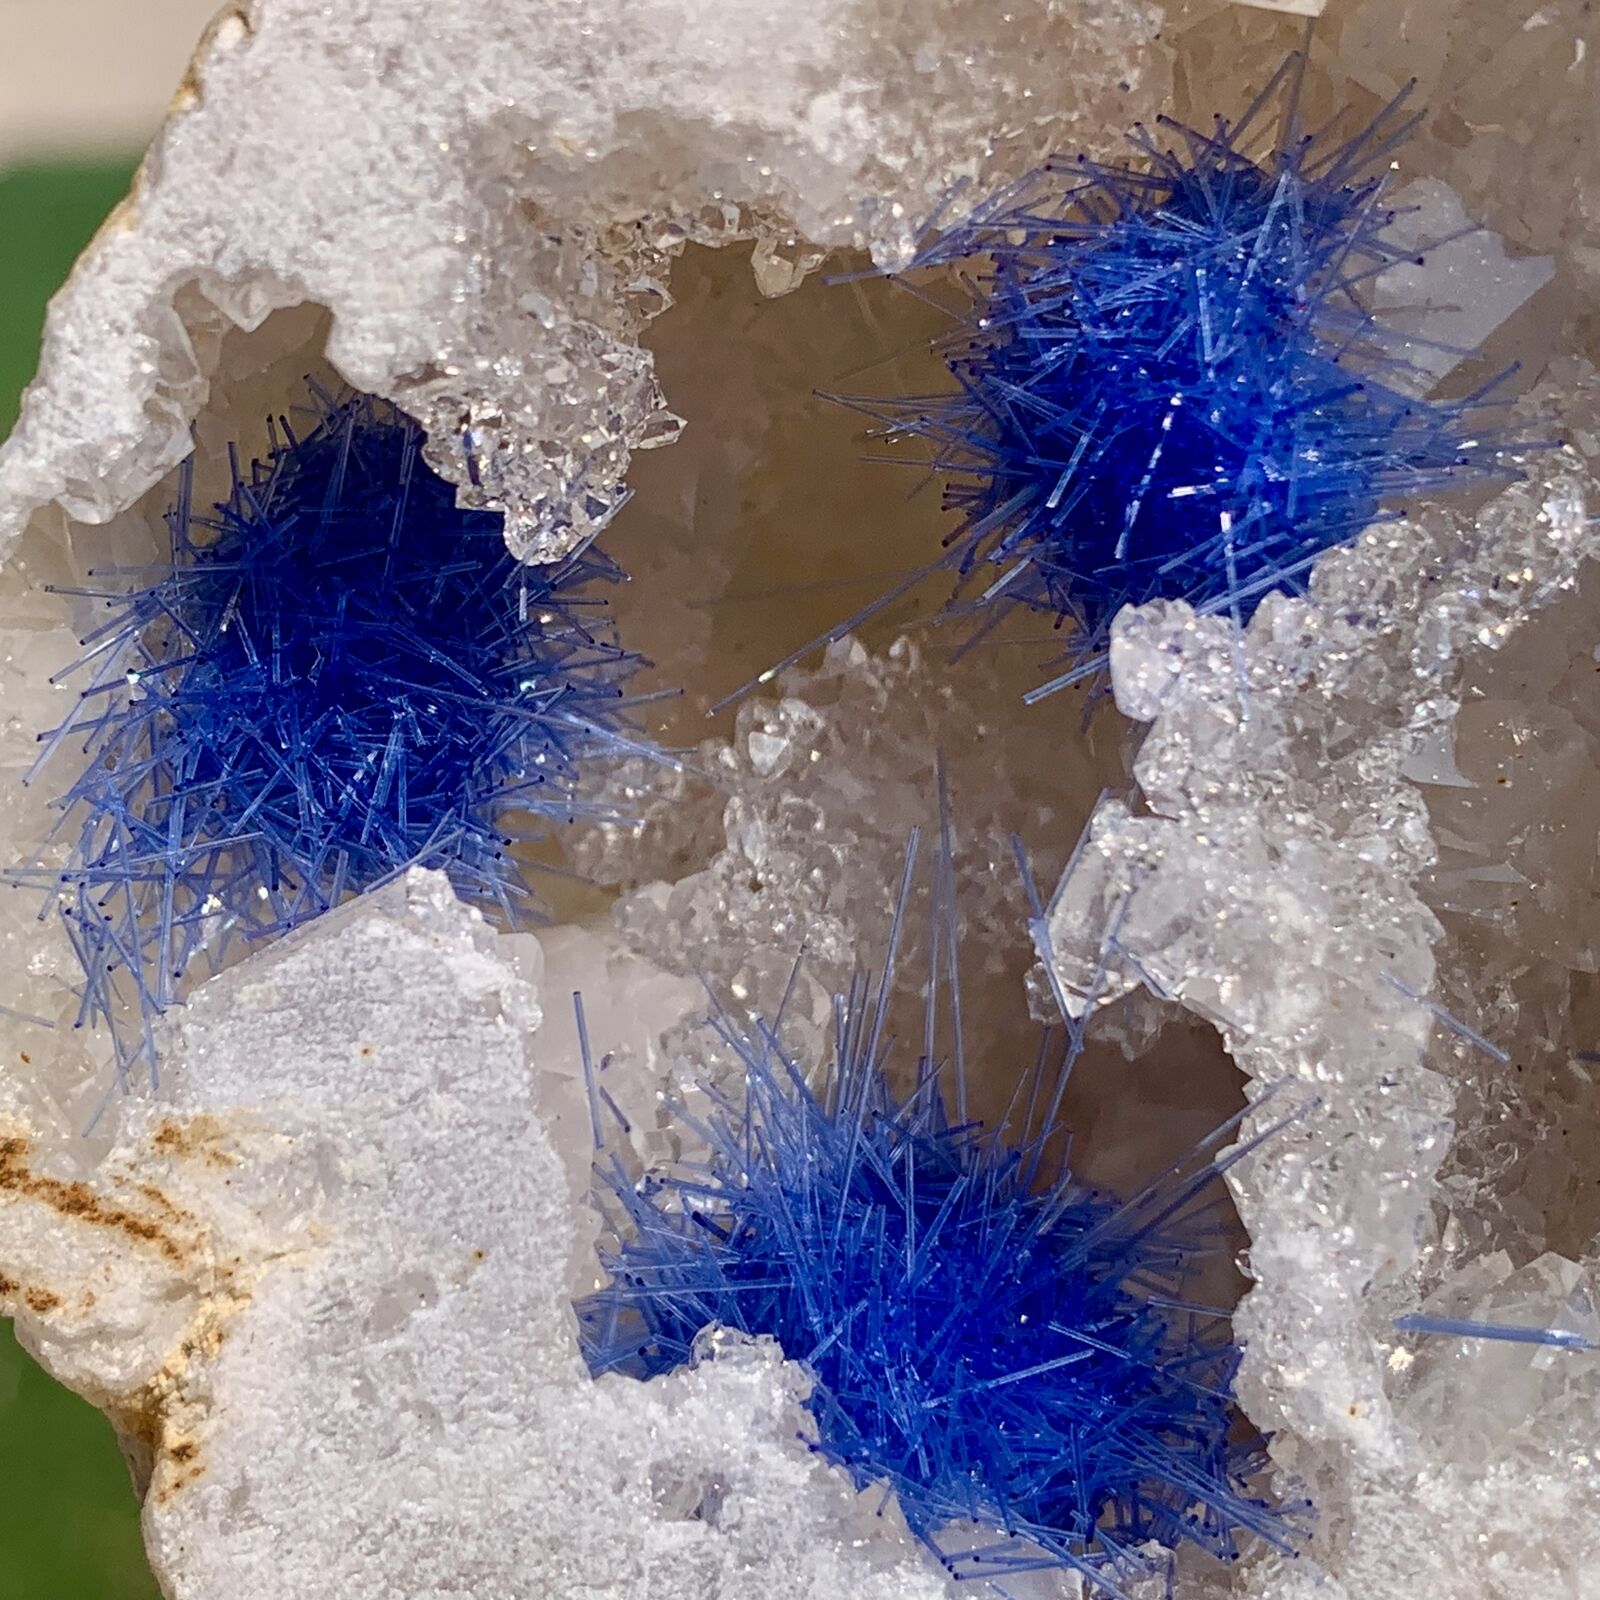 128G Rare Moroccan blue magnesite and quartz crystal coexisting specimen